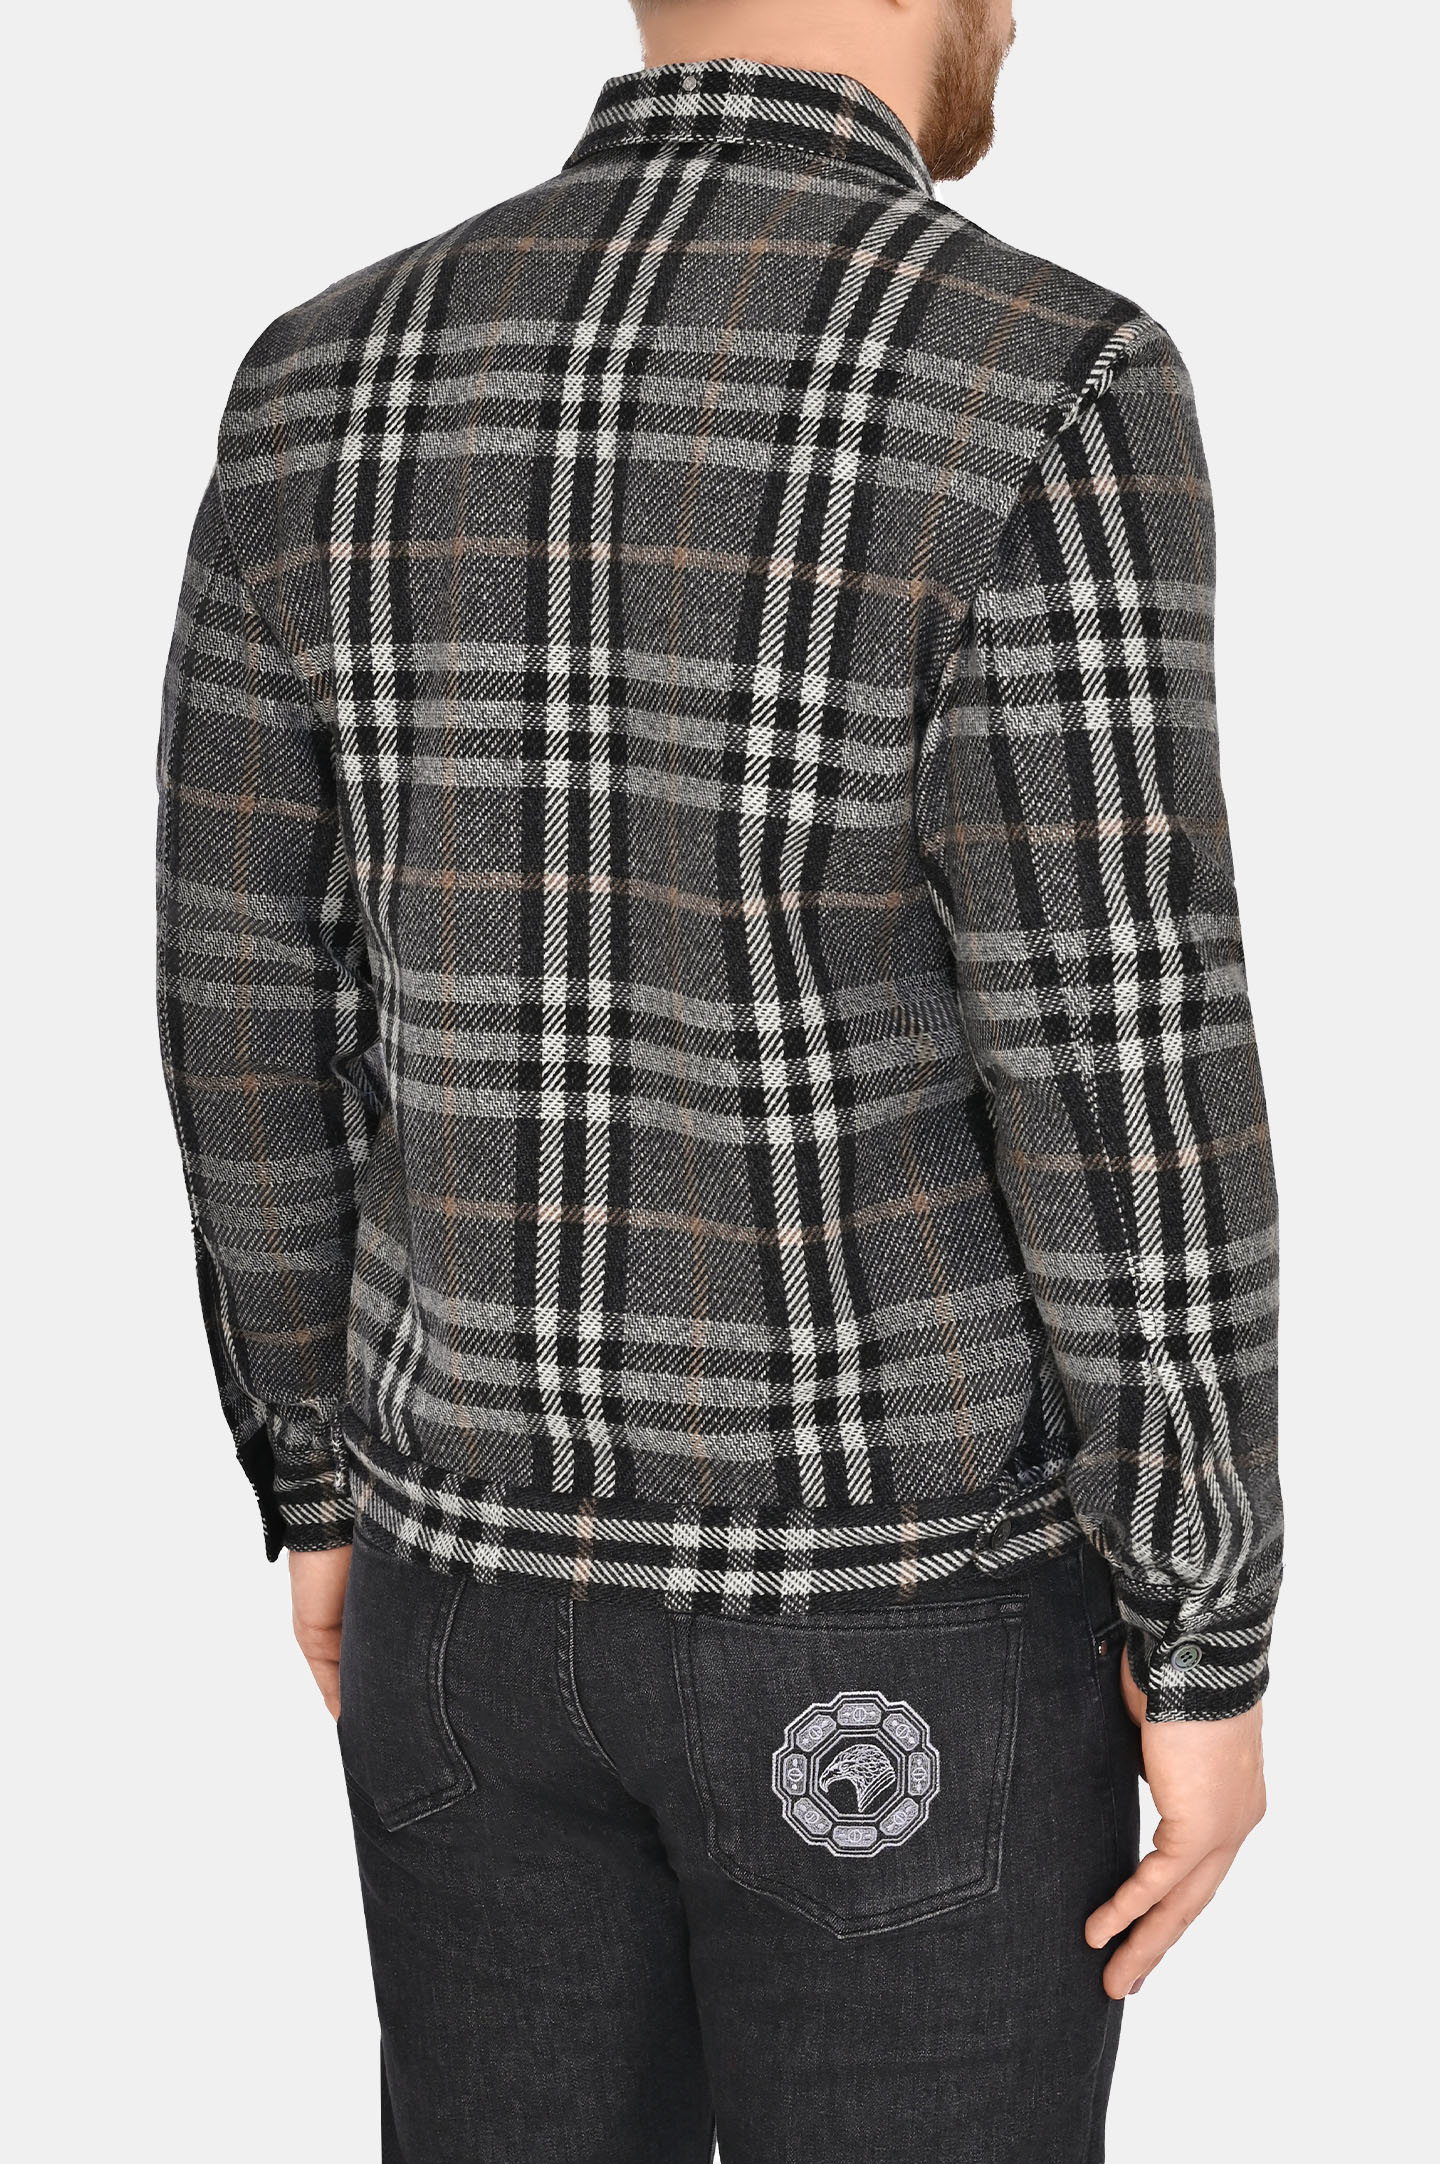 Рубашка-пиджак из шерсти и кашемира STEFANO RICCI MC007099 WC005P, цвет: Темно-серый, Мужской